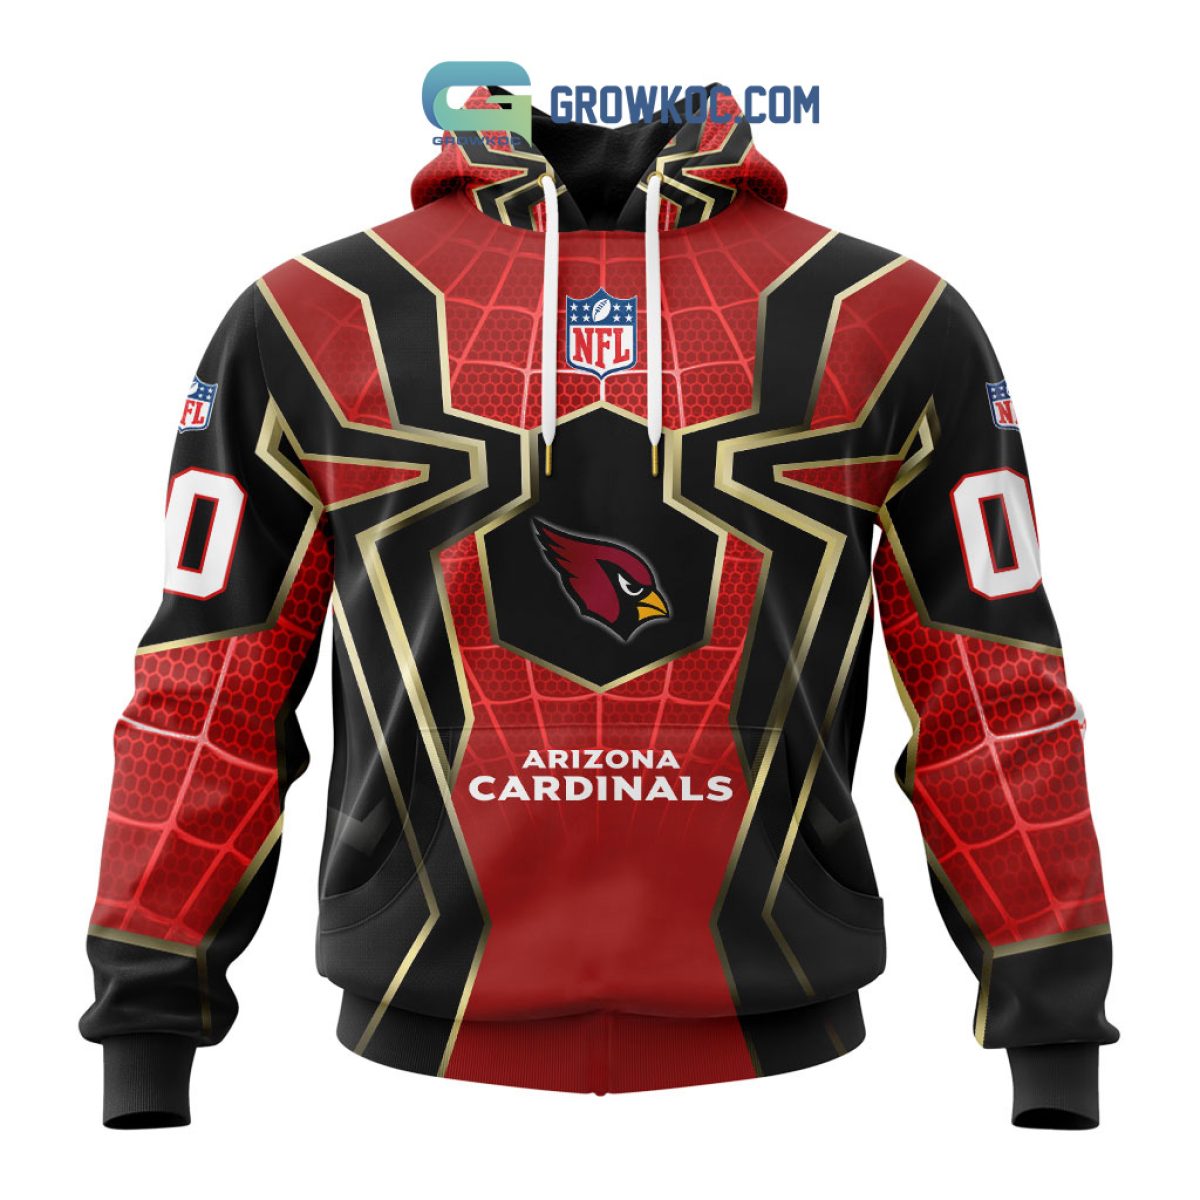 Arizona Cardinals Personalized NFL Team Baseball Jersey Shirt